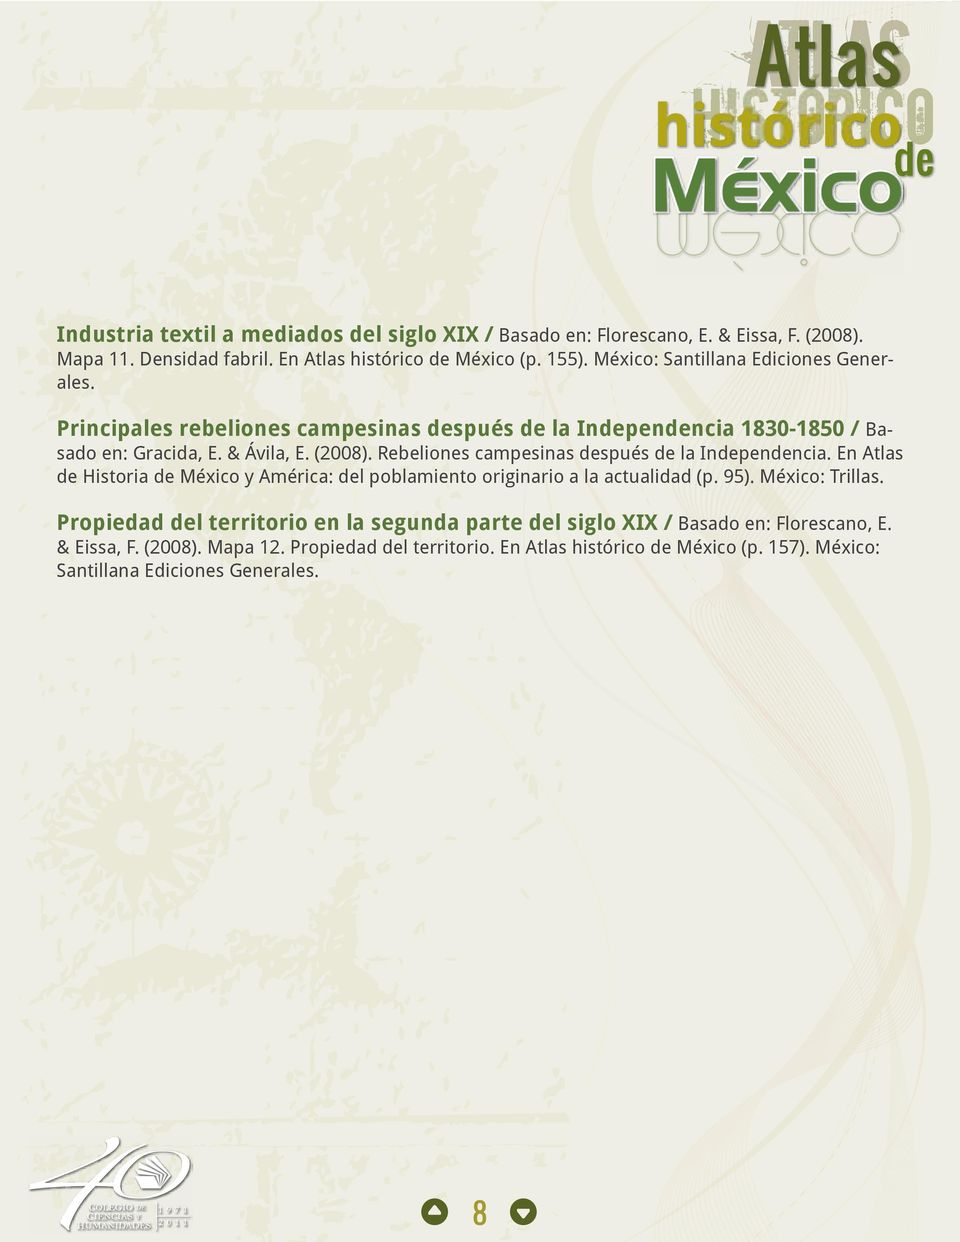 Rebeliones campesinas después de la Independencia. En Atlas de Historia de México y América: del poblamiento originario a la actualidad (p. 95). México: Trillas.